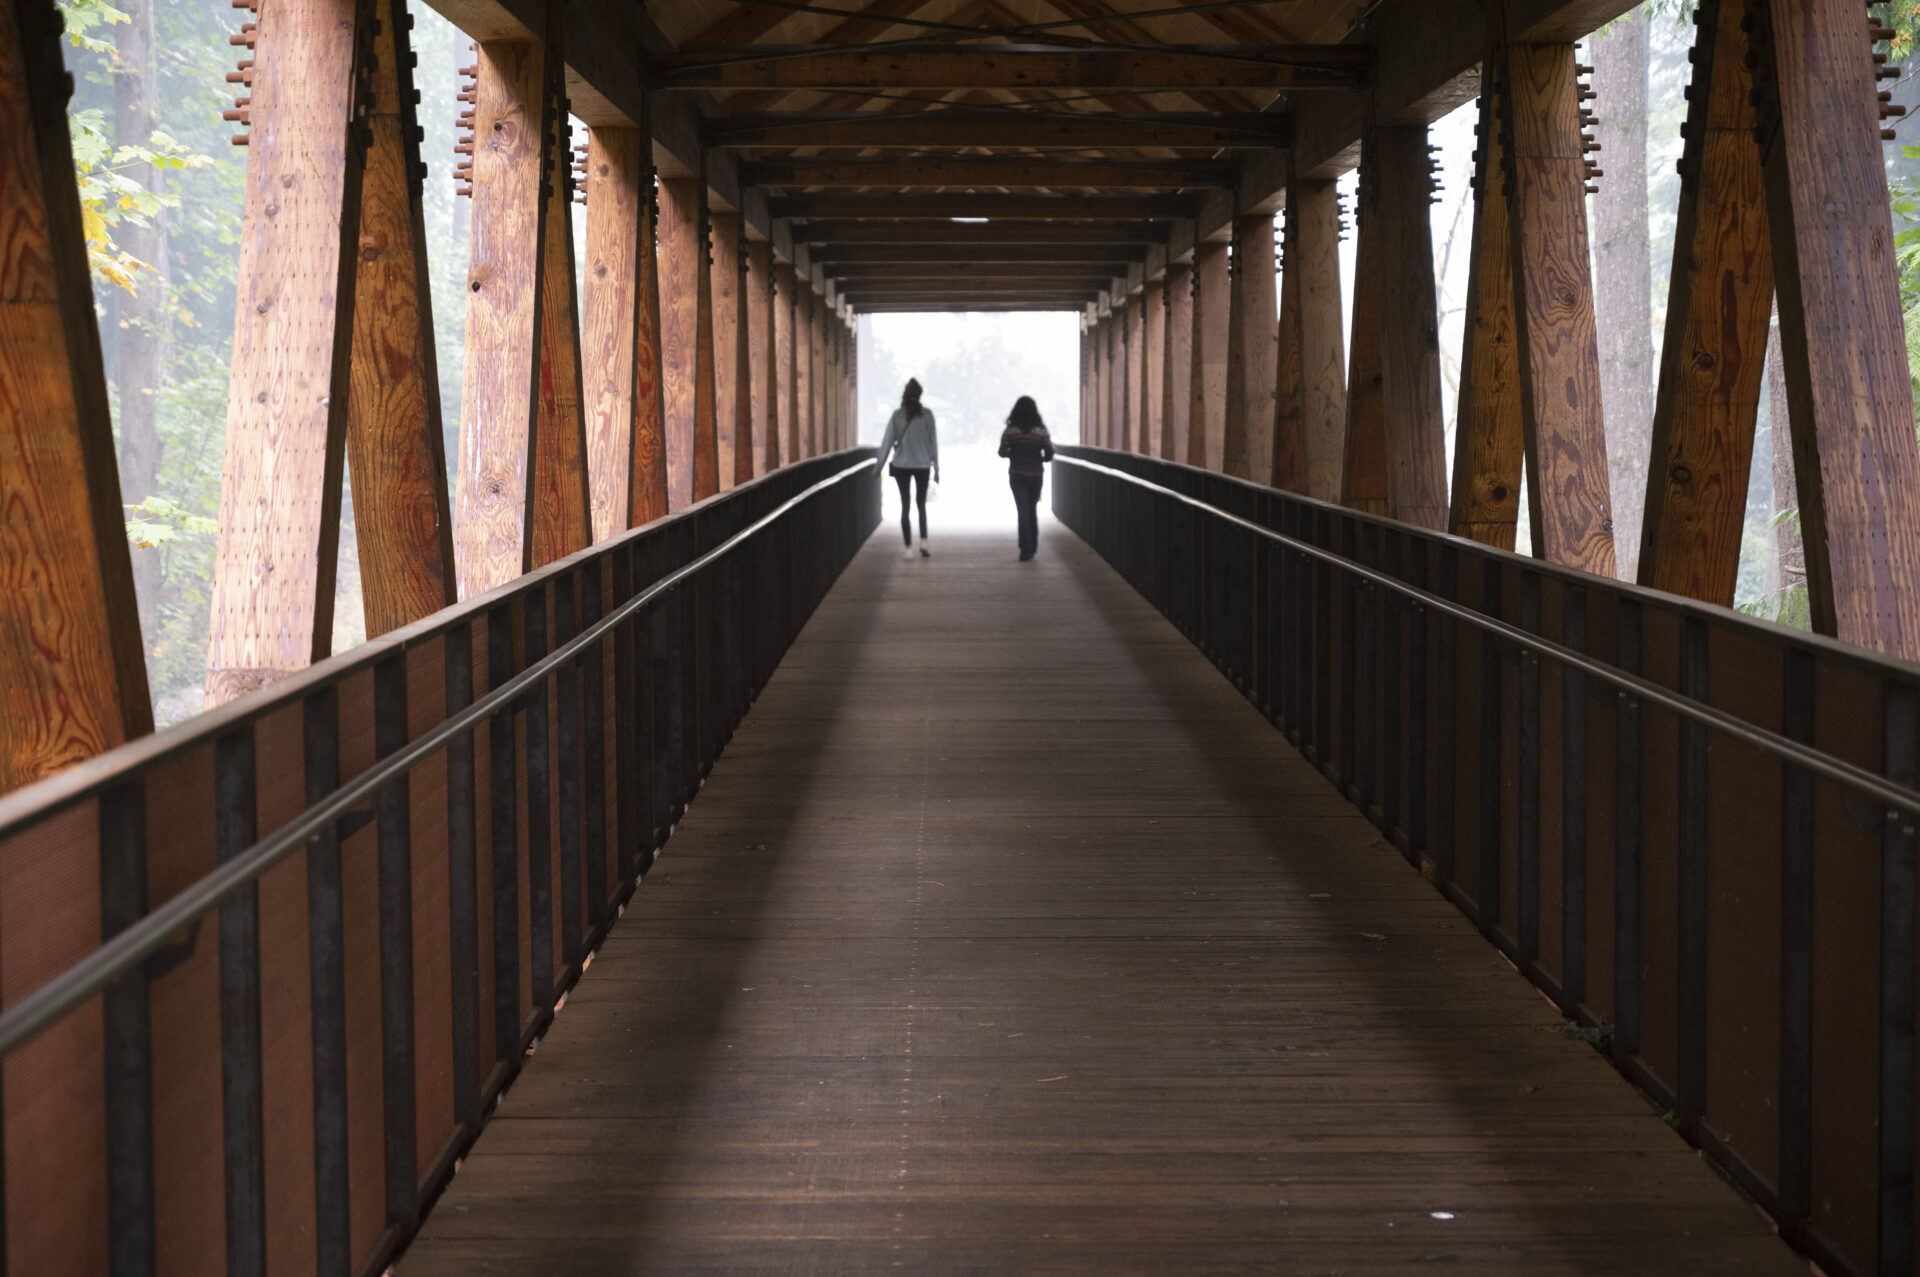 Photo of two people walking across the bridge.